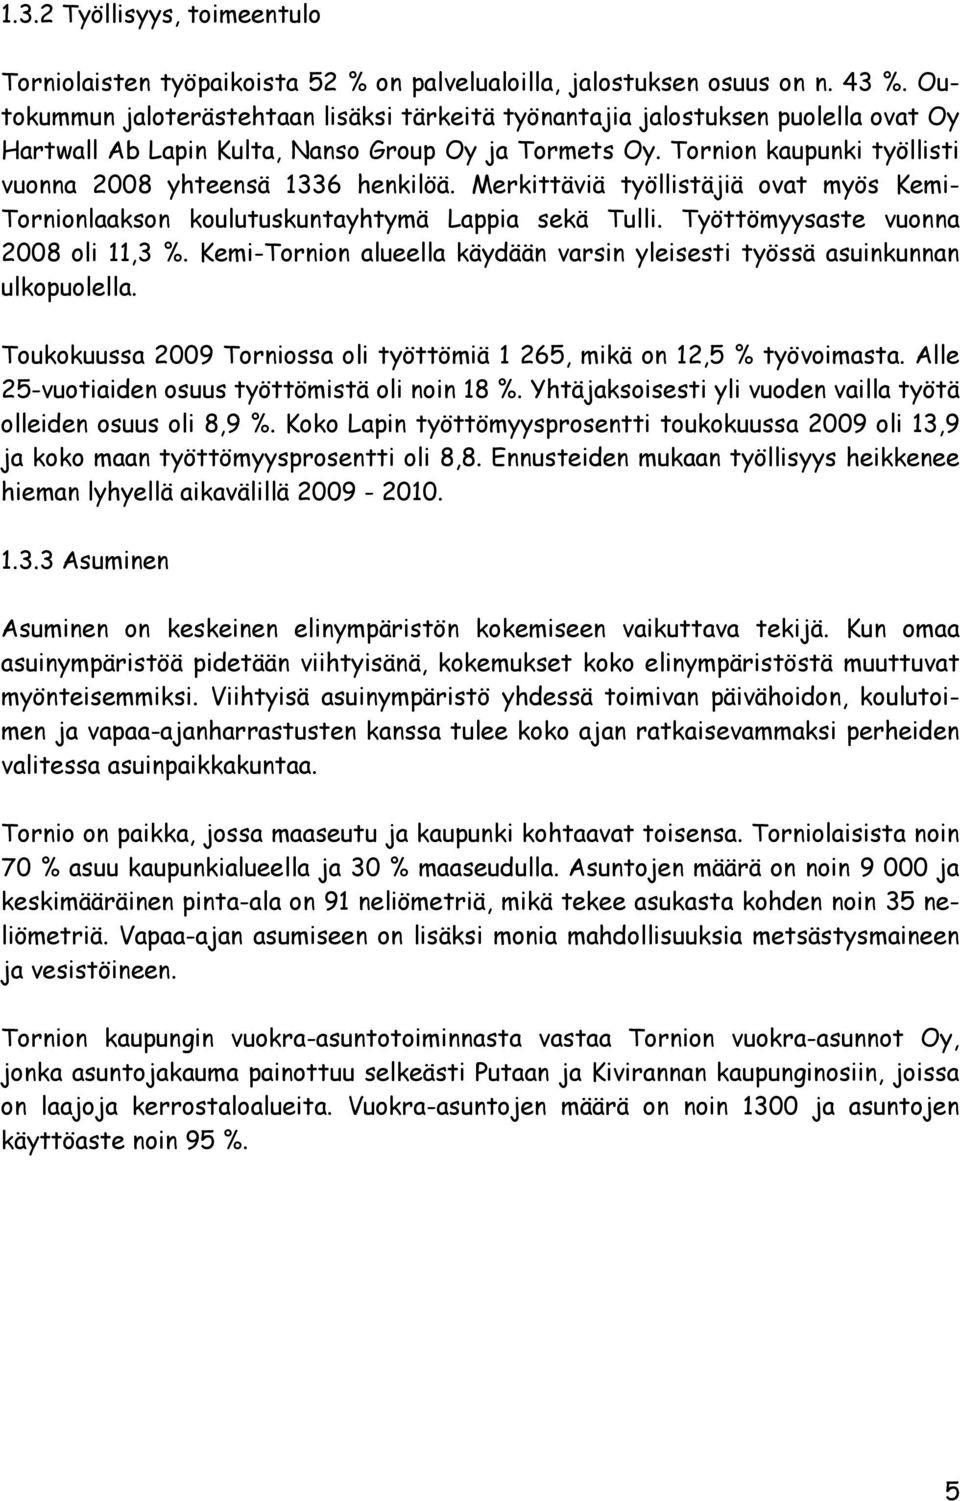 Tornion kaupunki työllisti vuonna 2008 yhteensä 1336 henkilöä. Merkittäviä työllistäjiä ovat myös Kemi- Tornionlaakson koulutuskuntayhtymä Lappia sekä Tulli. Työttömyysaste vuonna 2008 oli 11,3 %.